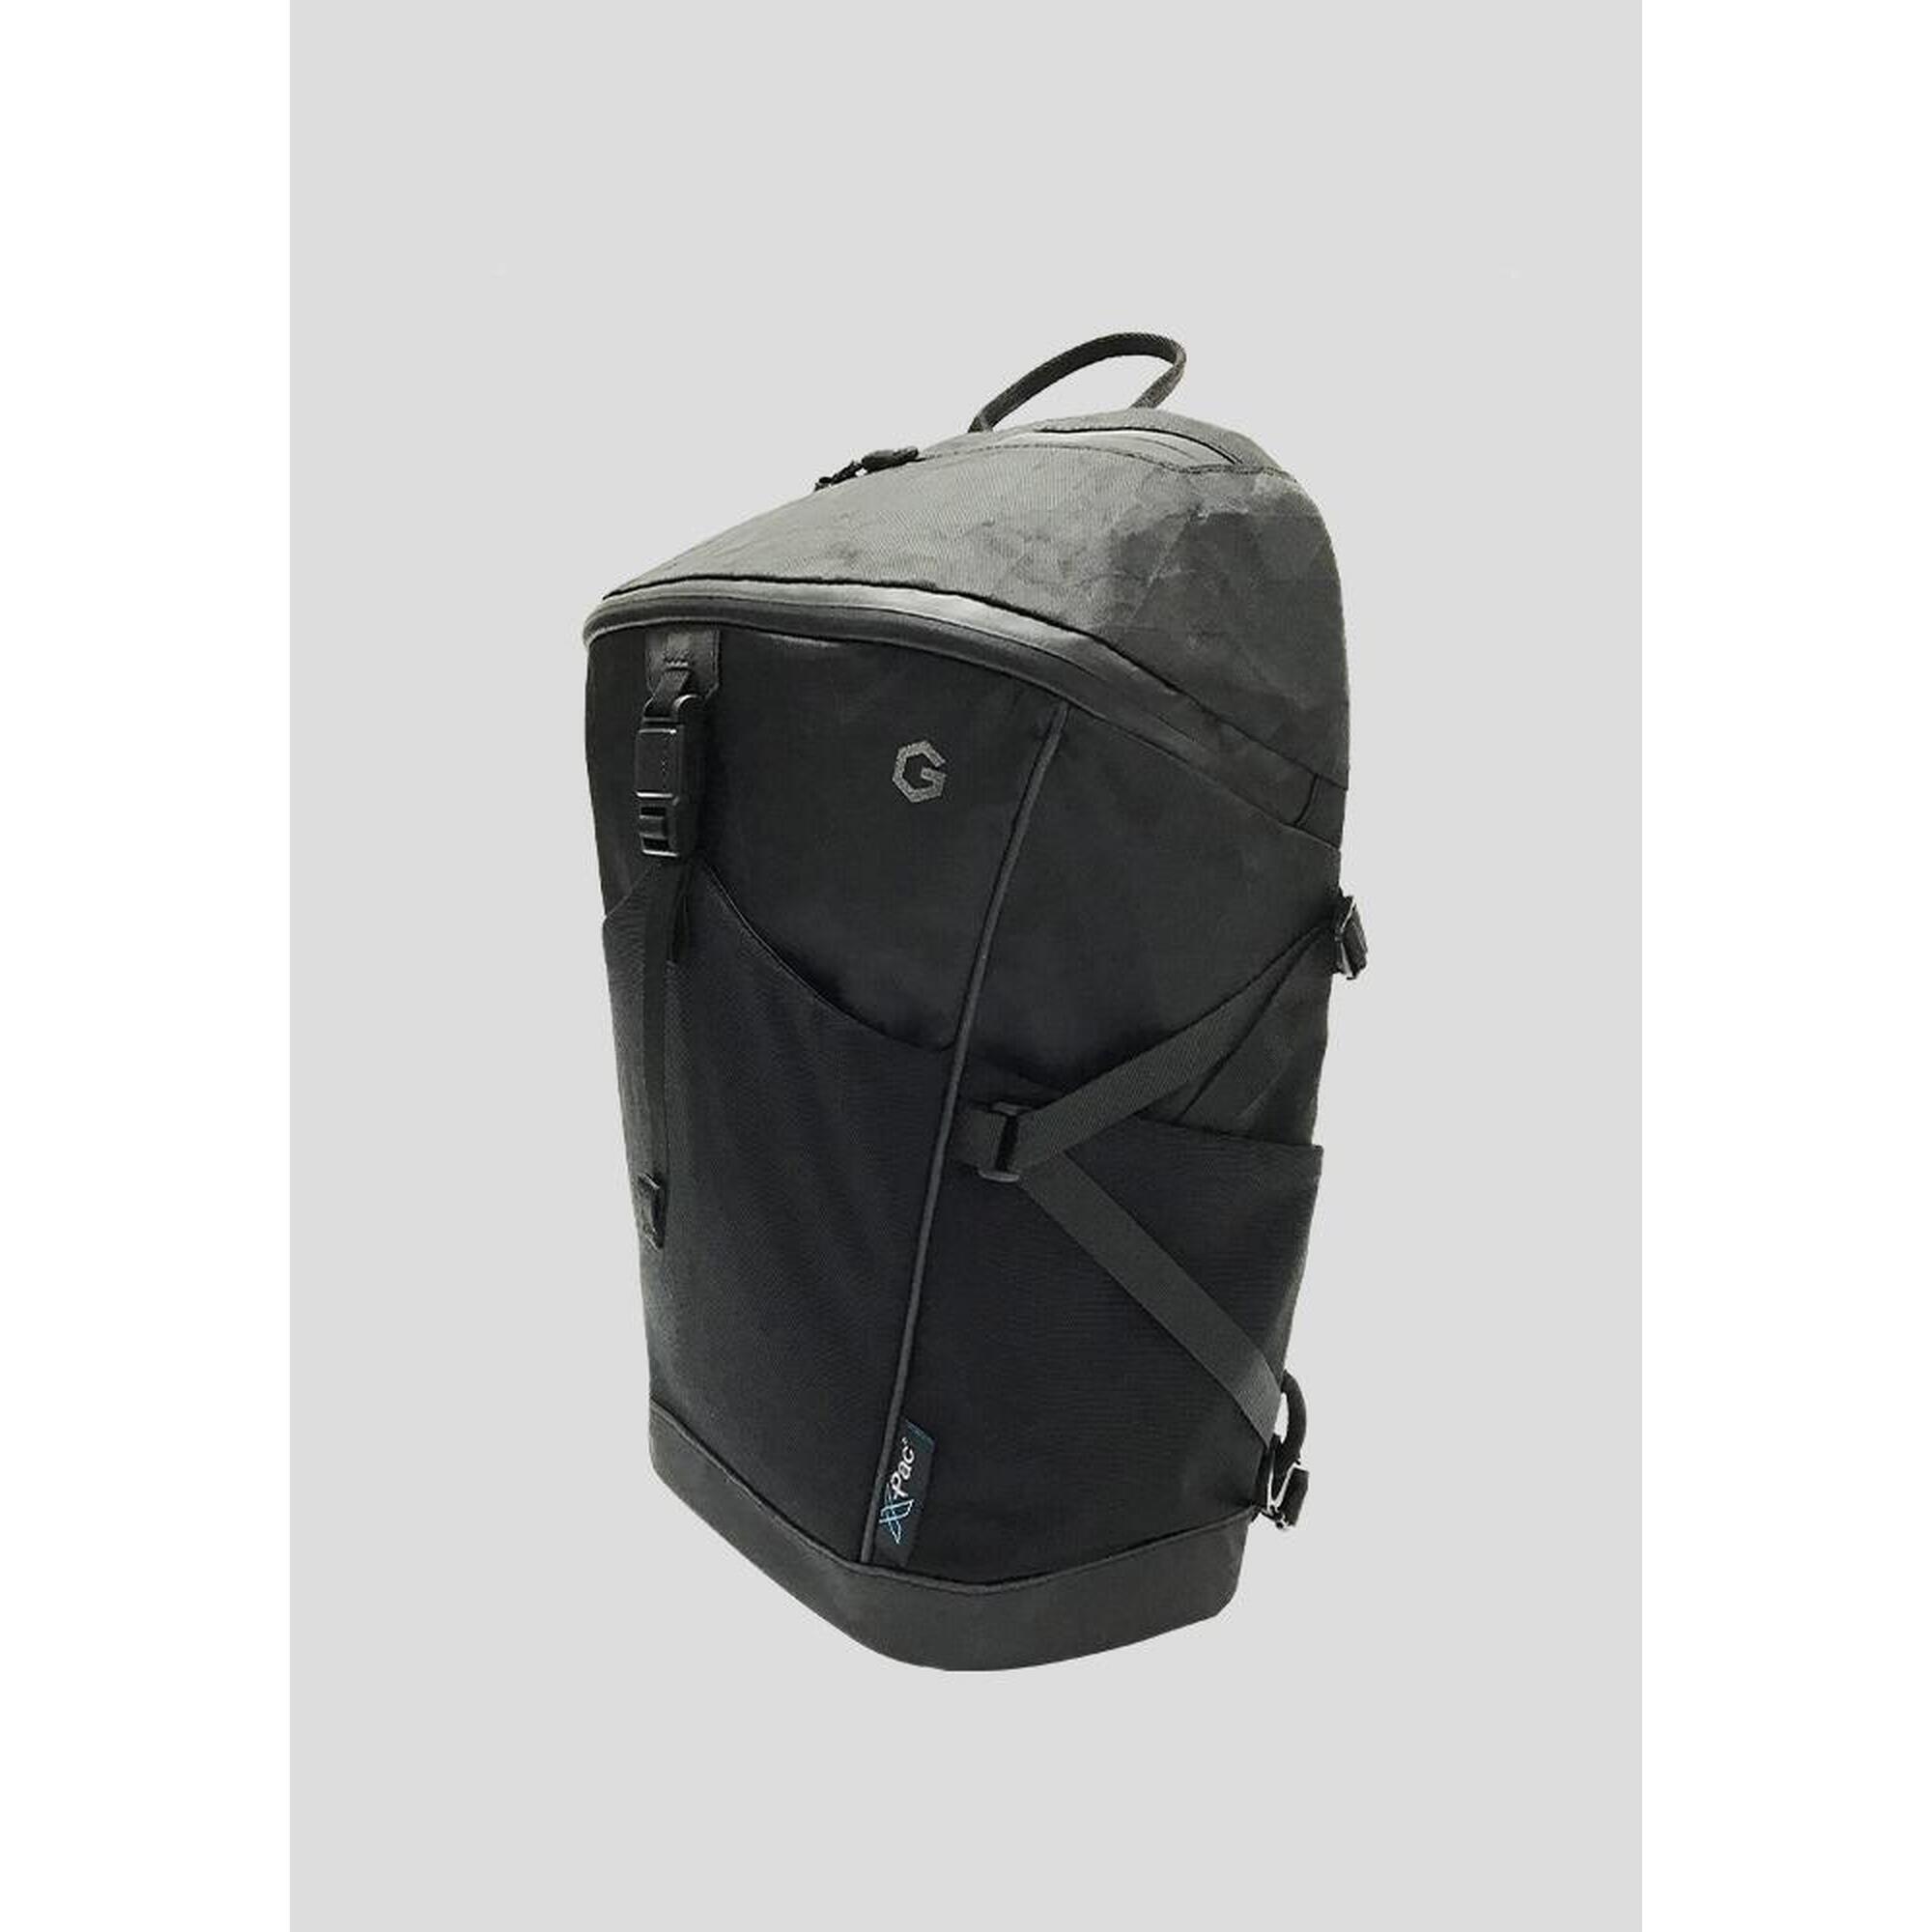 HEXA.GO Ultra Light Backpack 12L - Black